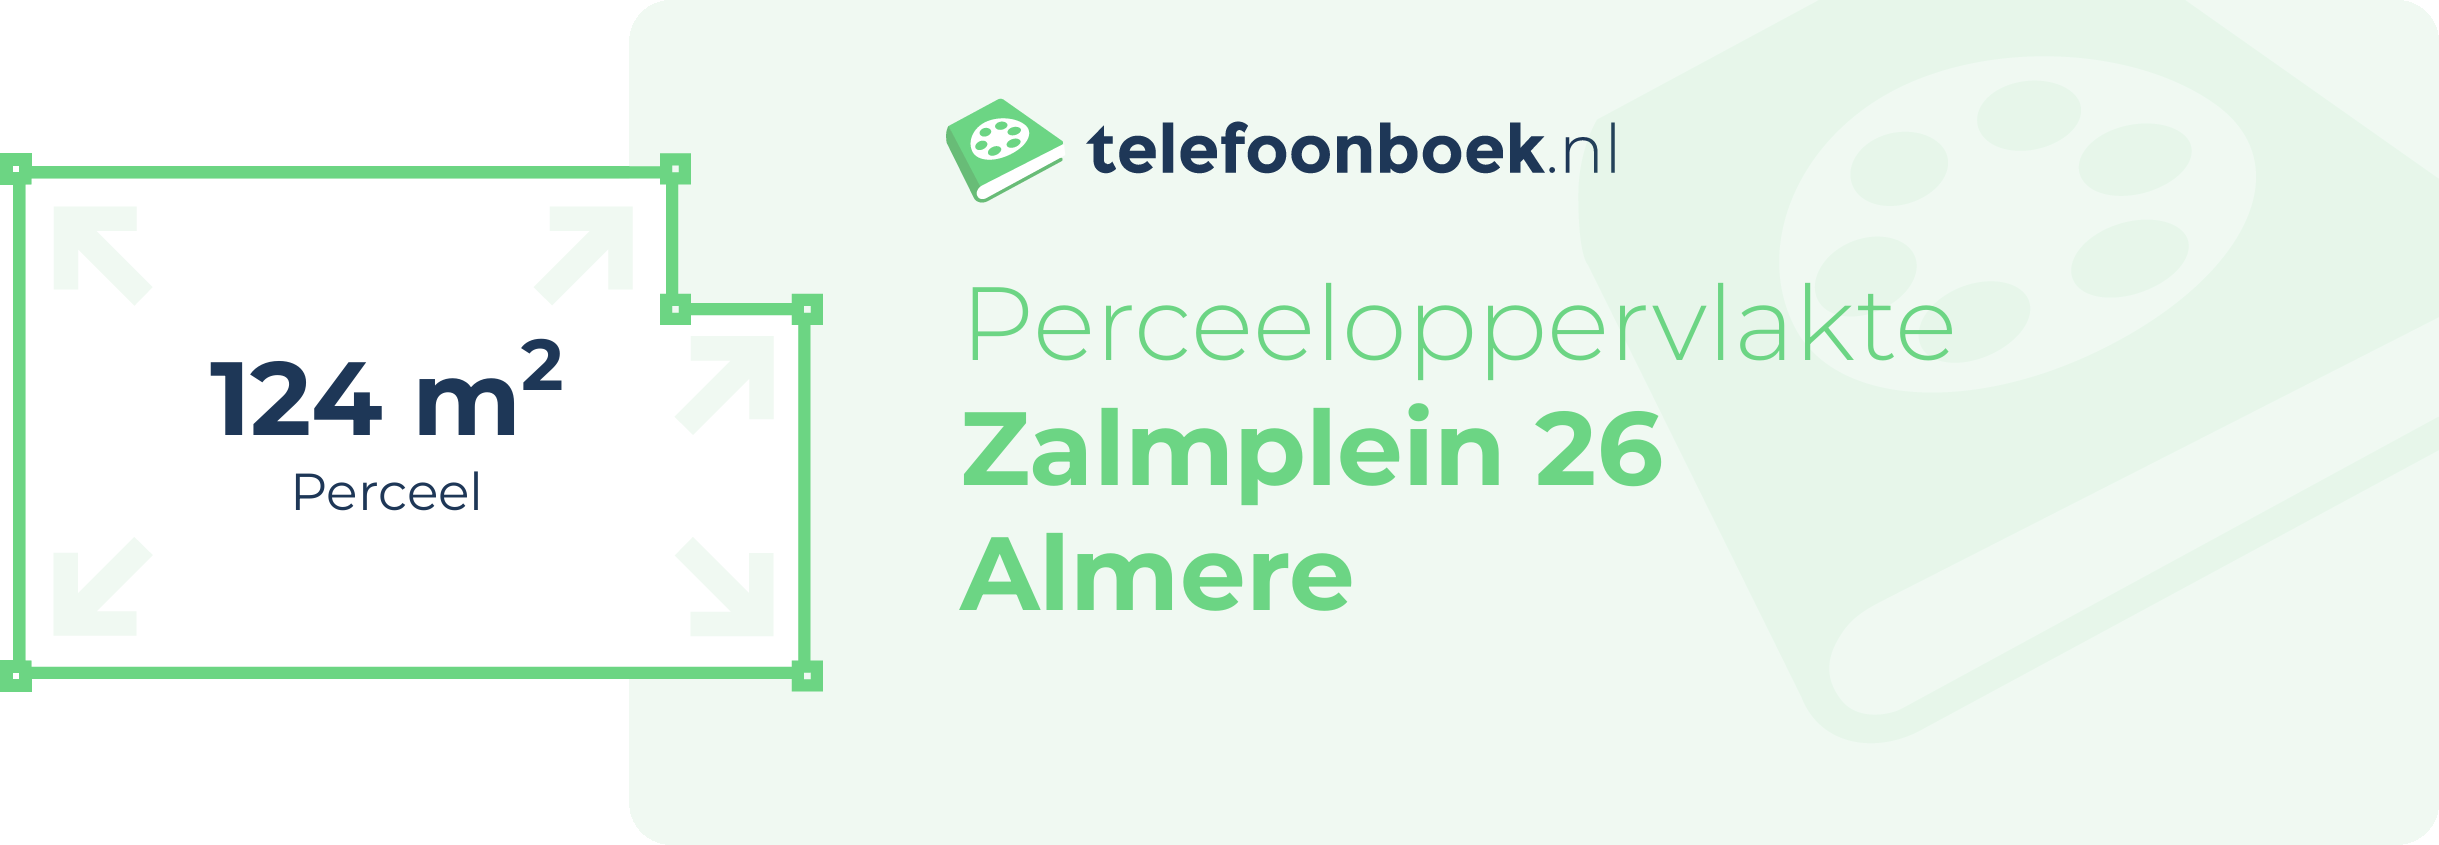 Perceeloppervlakte Zalmplein 26 Almere